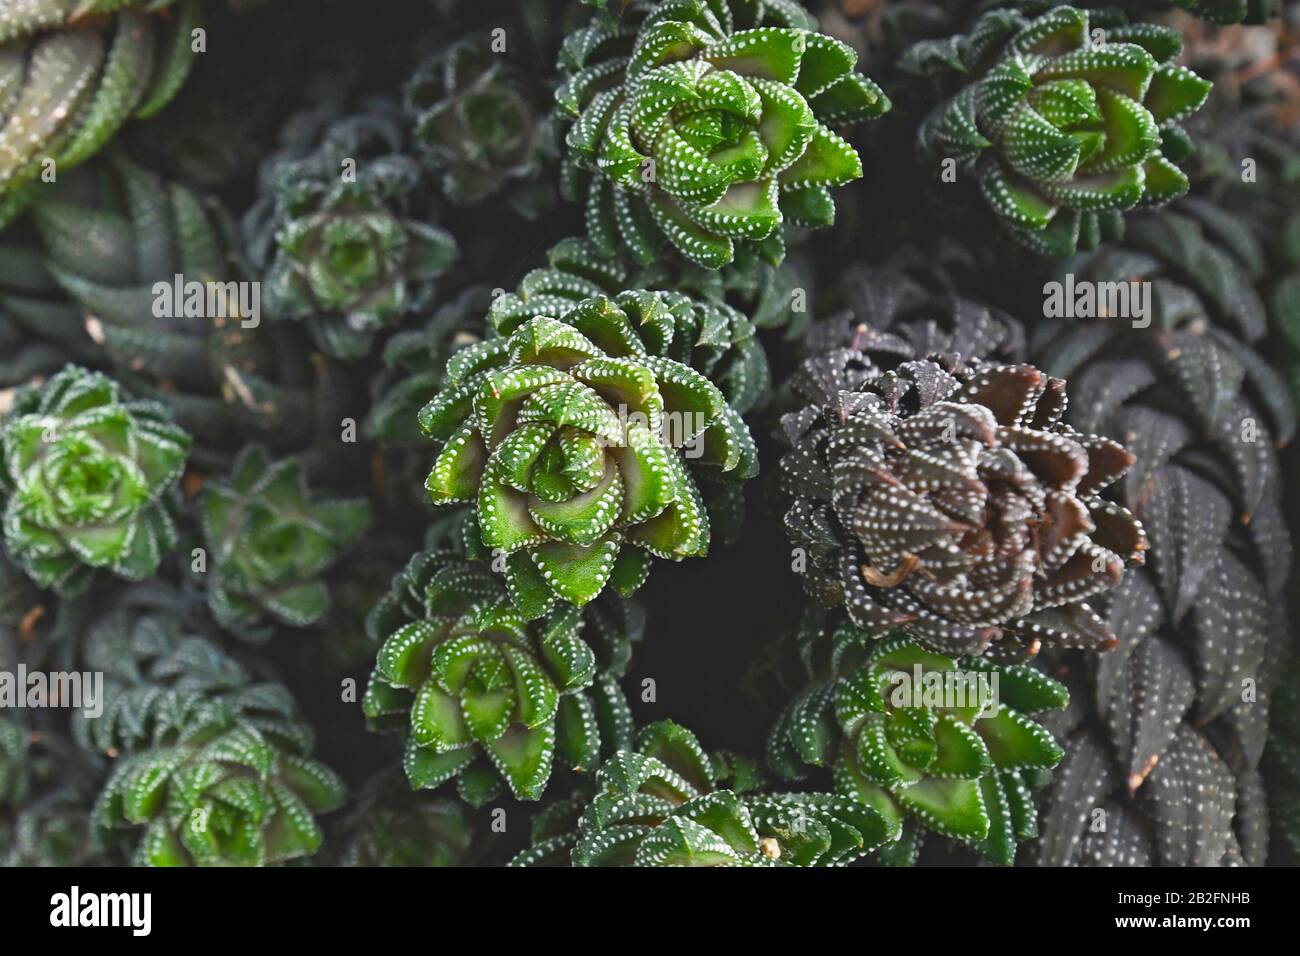 Draufsicht über tropische "Haworthiopsis Reinwardtii"-saftige Pflanzen mit Basalrosette aus weiß gefleckten fleischigen Blättern, die in einem spiralförmigen Patter angeordnet sind Stockfoto